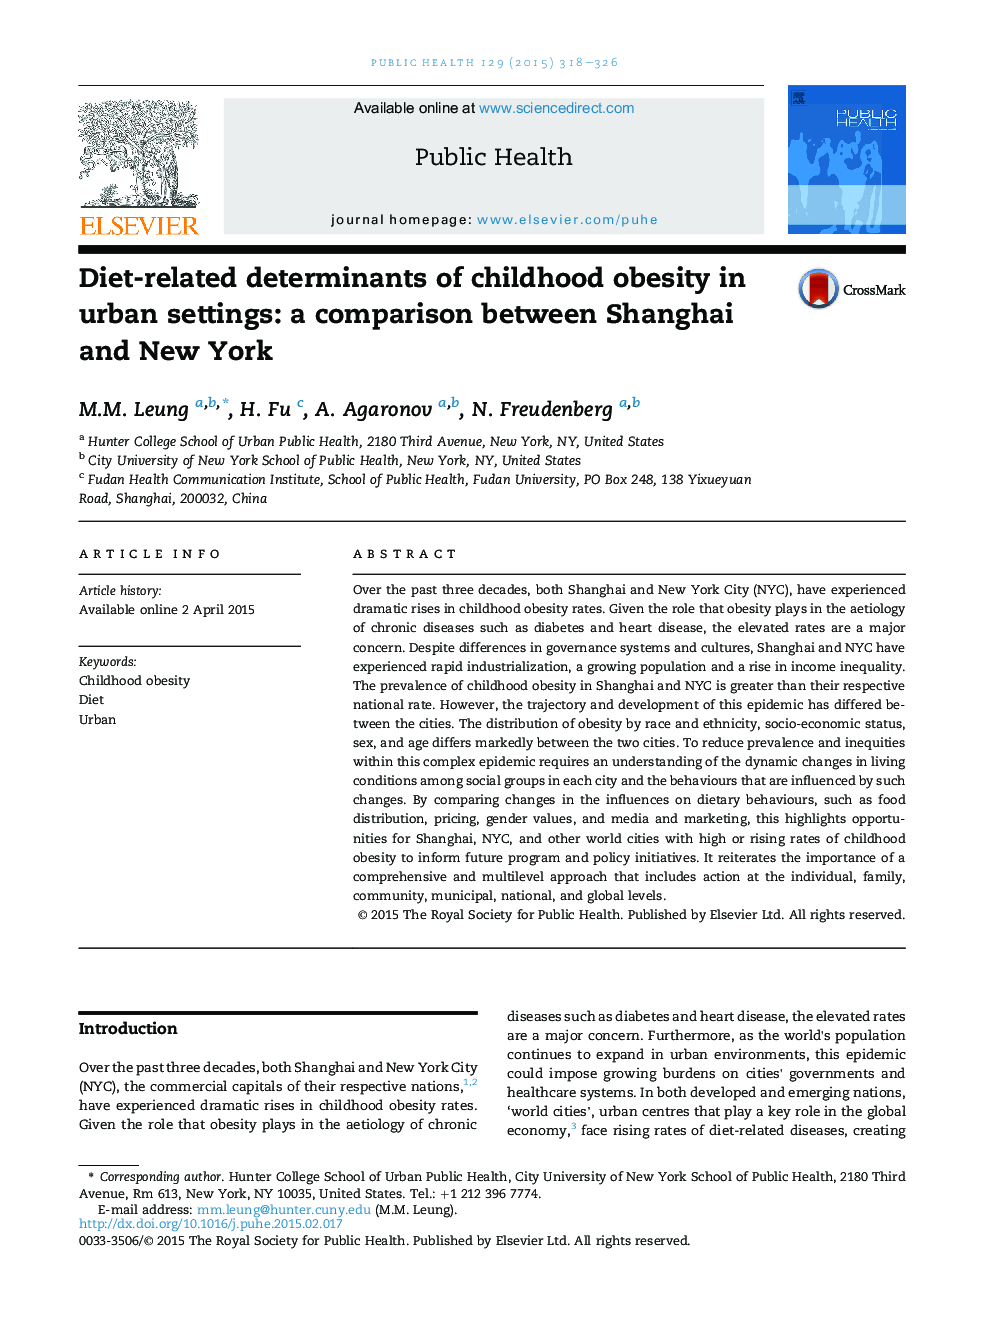 عوامل تعیین کننده رژیم غذایی چاقی کودکان در محیط های شهری: مقایسهای بین شانگهای و نیویورک 